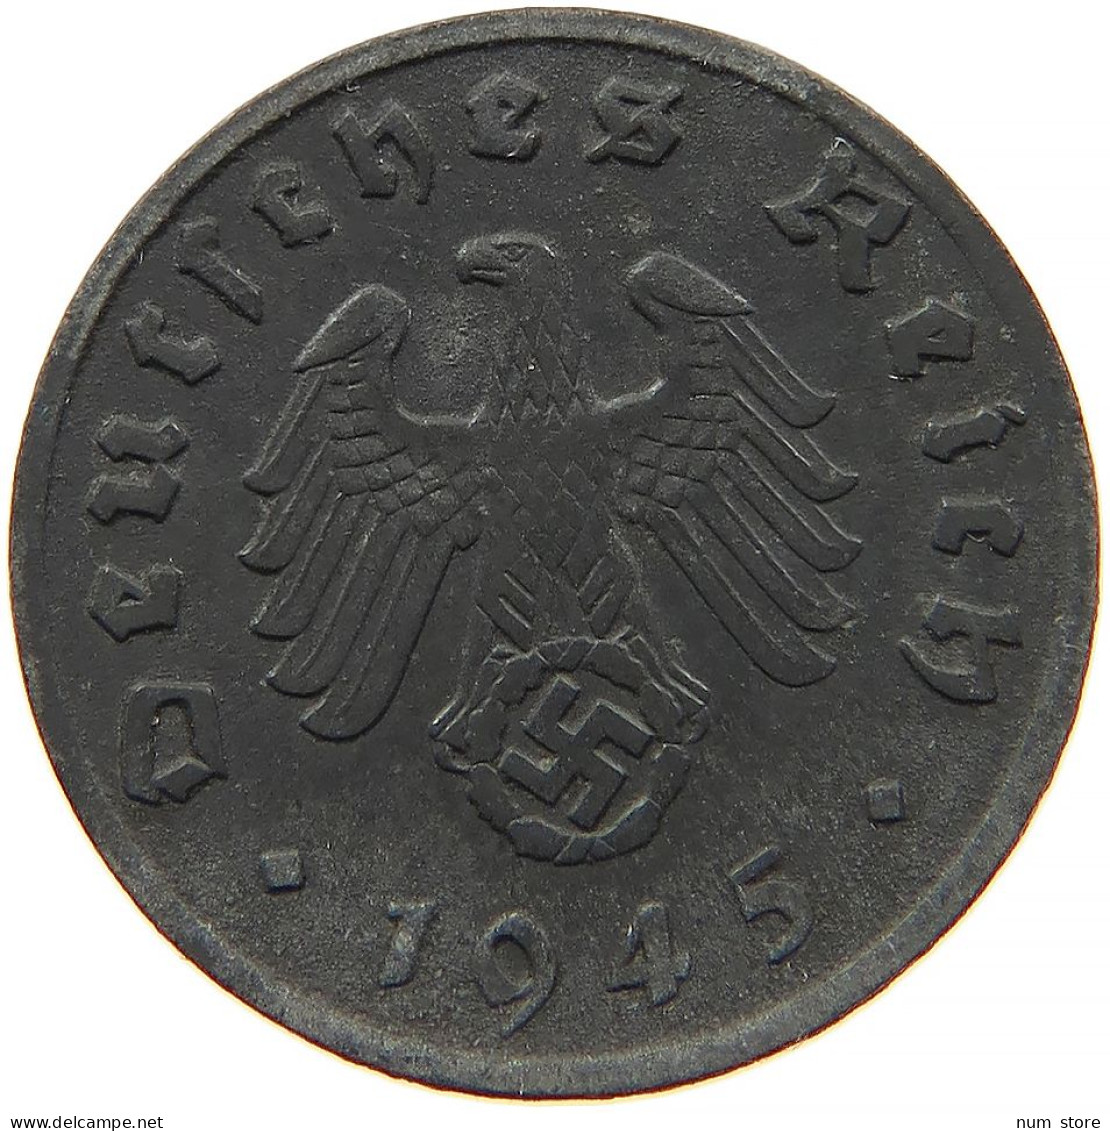 GERMANY 1 REICHSPFENNIG 1945 A #s091 1013 - 1 Reichspfennig